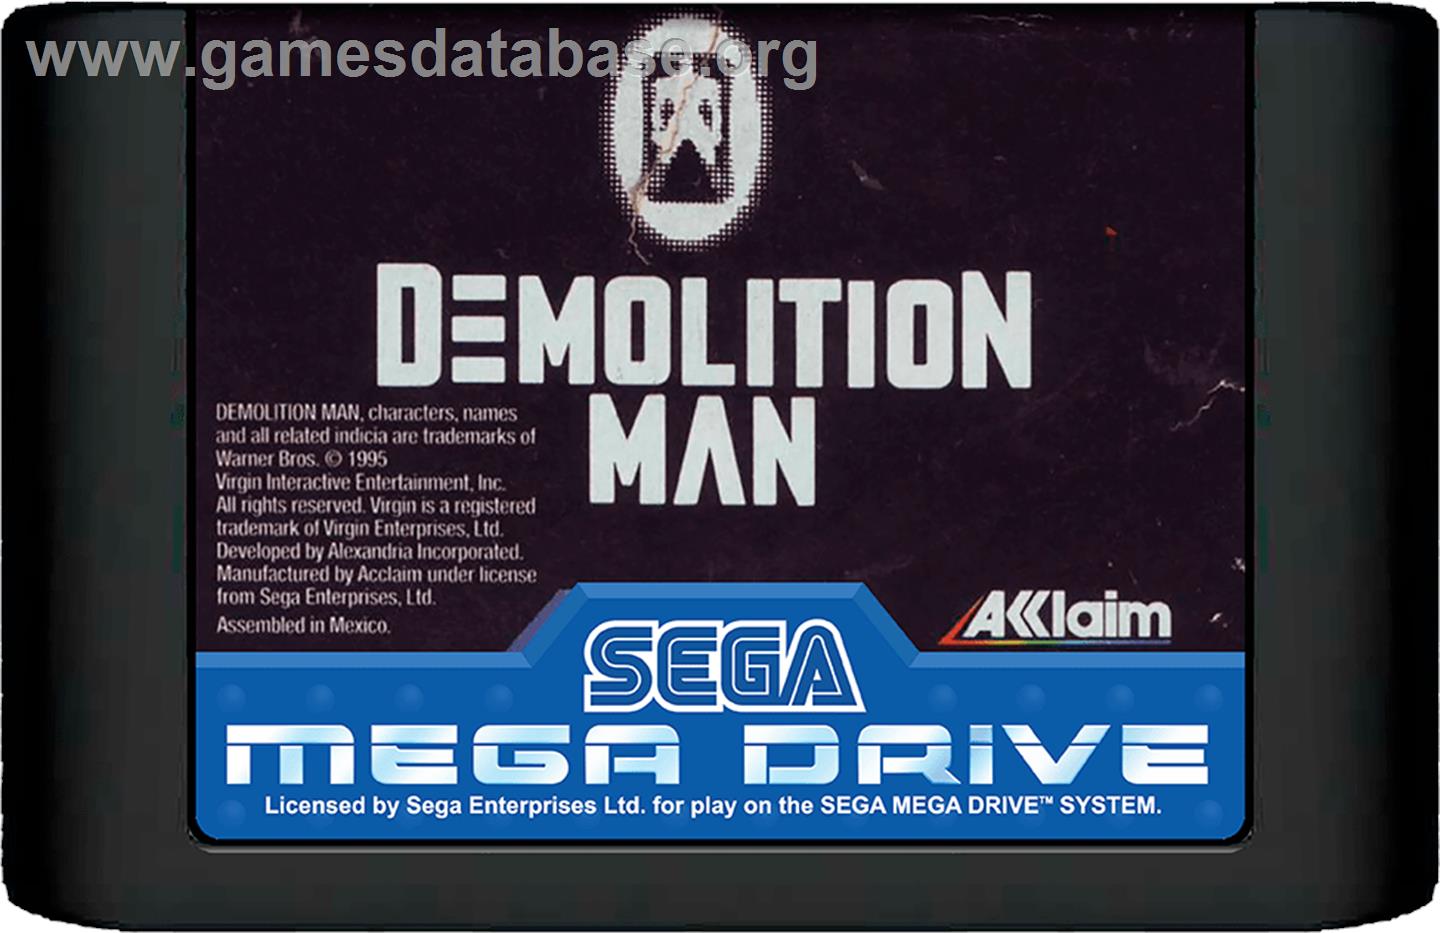 Demolition Man - Sega Genesis - Artwork - Cartridge